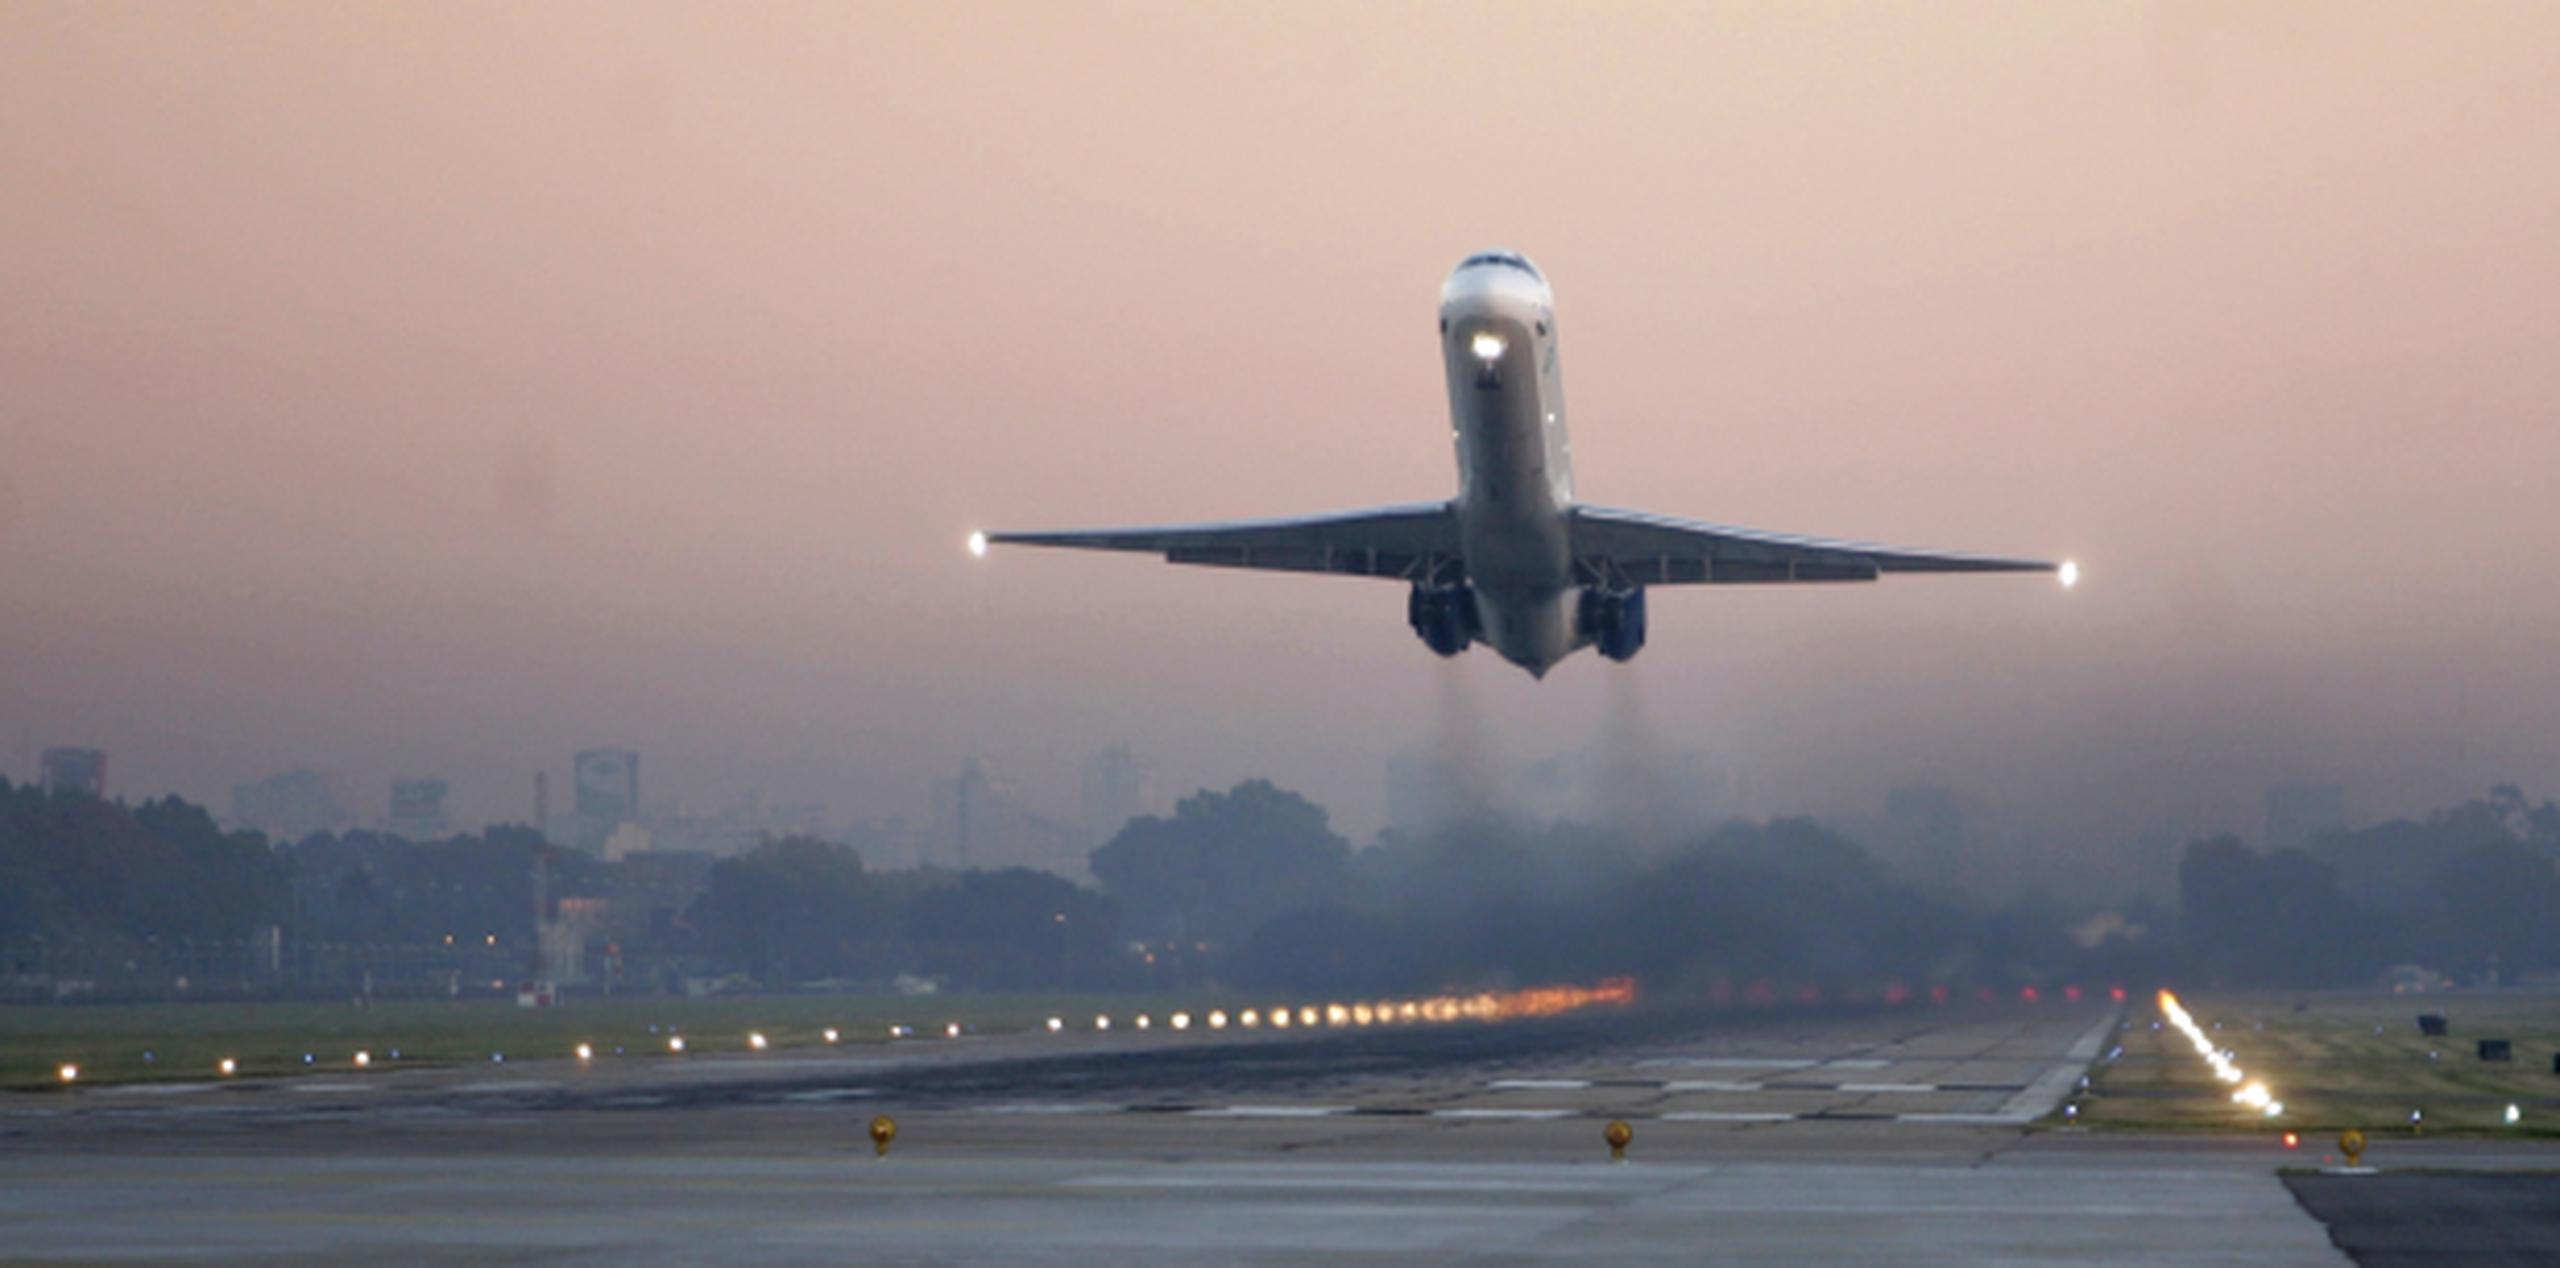 Las aerolíneas se han quejado que a la FAA le ha tomado demasiado tiempo modernizar su sistema de tráfico aéreo. (Archivo)